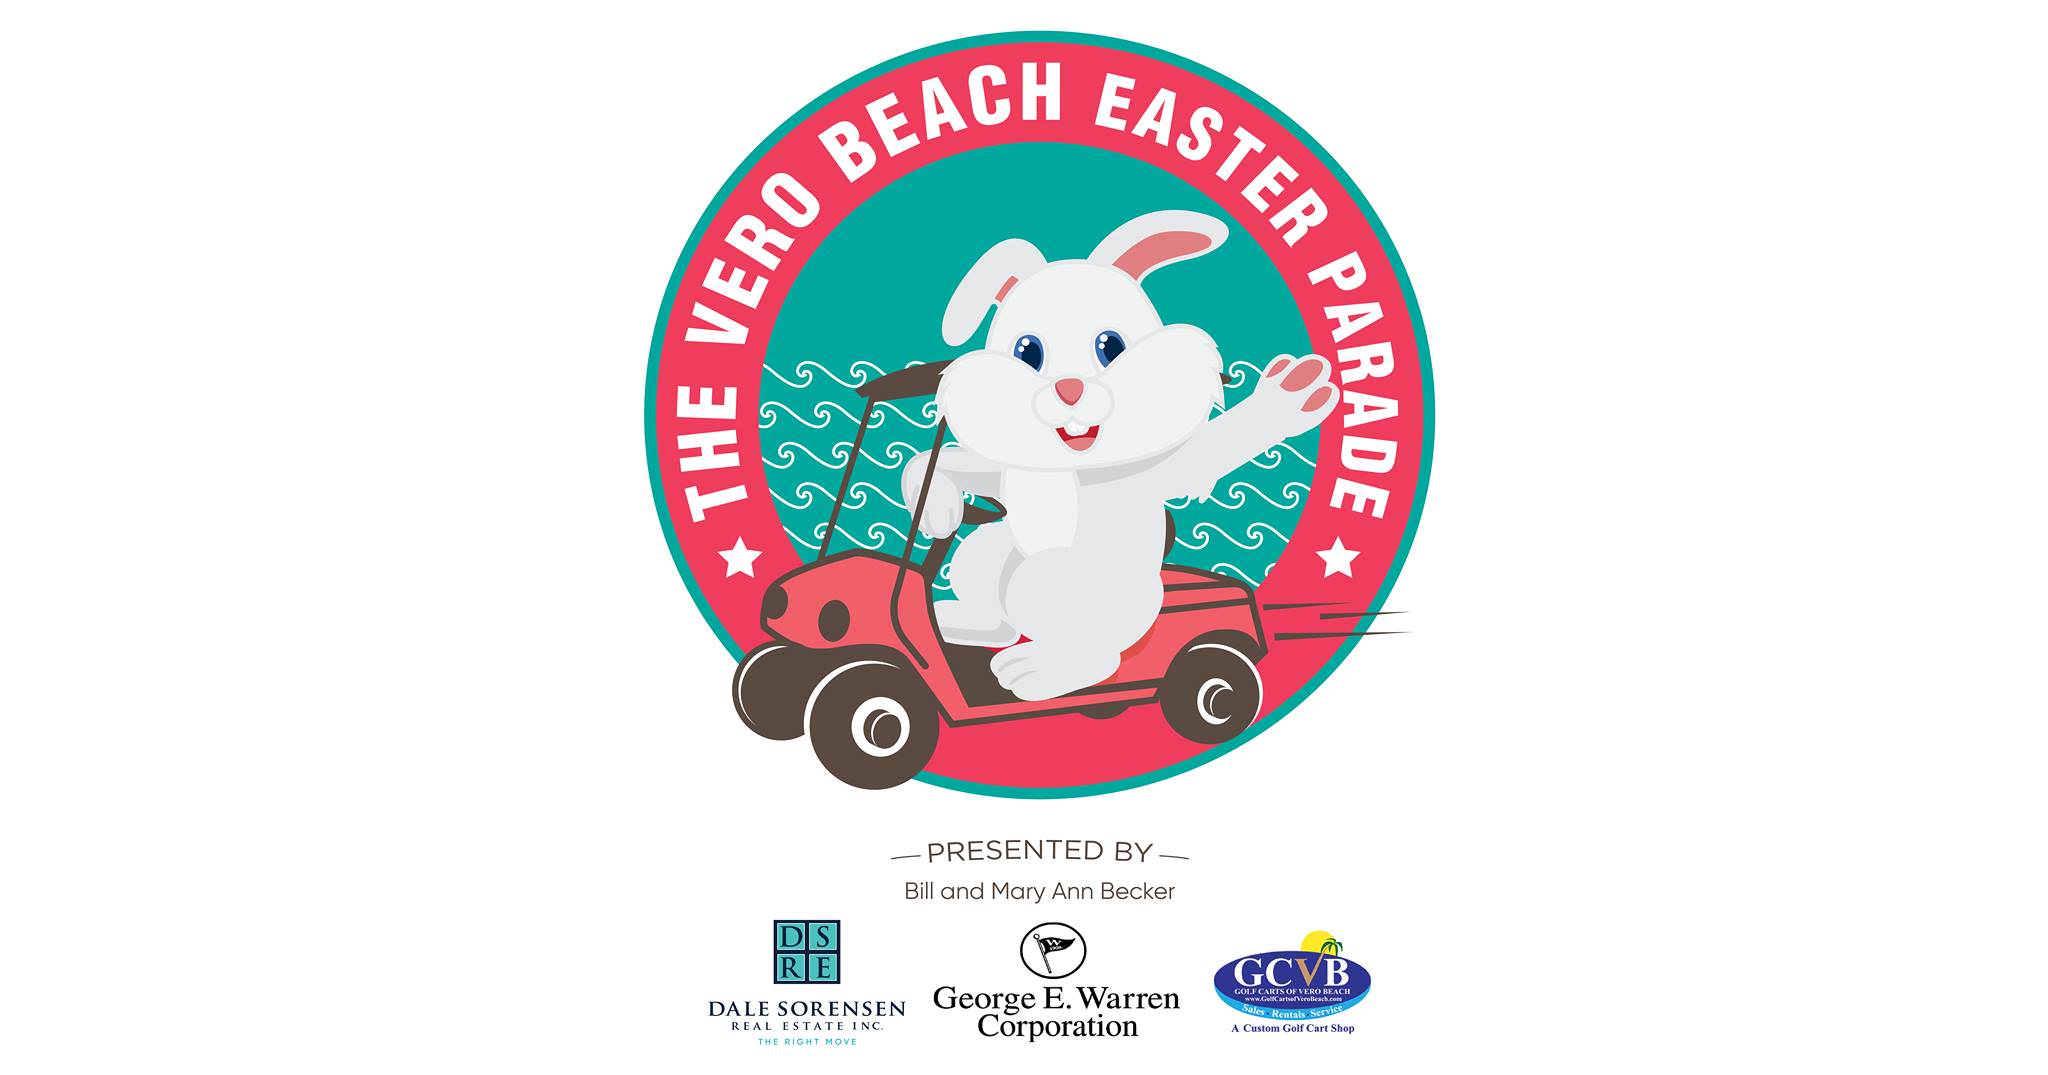 Vero Beach Easter Parade